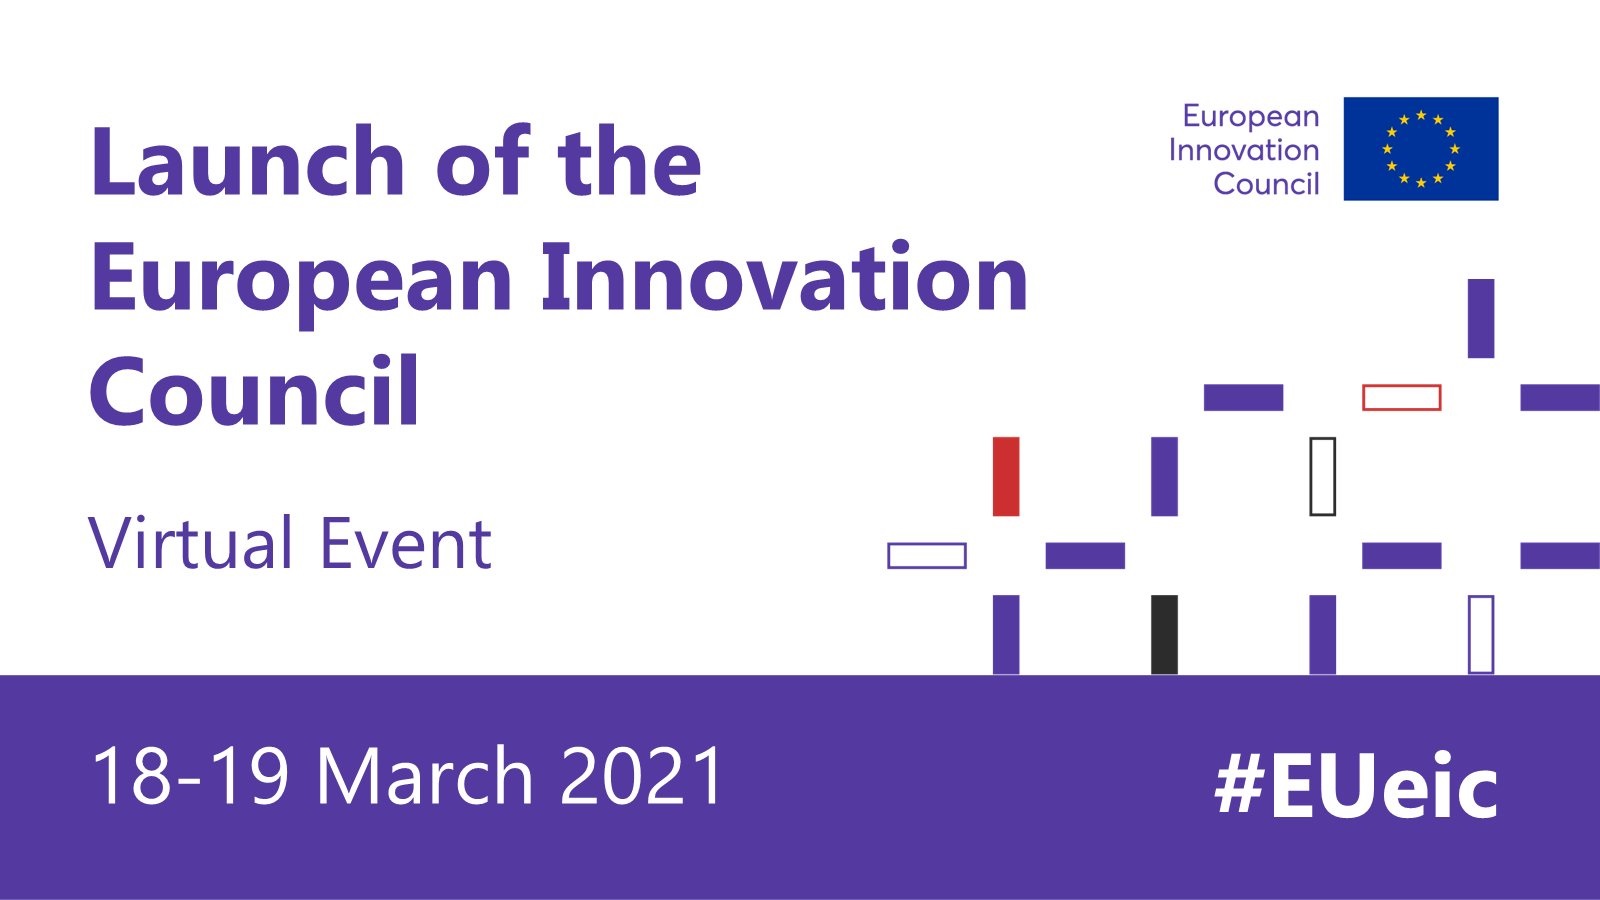 Pierwsze konkursy Europejskiej Rady ds. Innowacji w ramach Horyzont Europa zostaną ogłoszone 18 marca br.